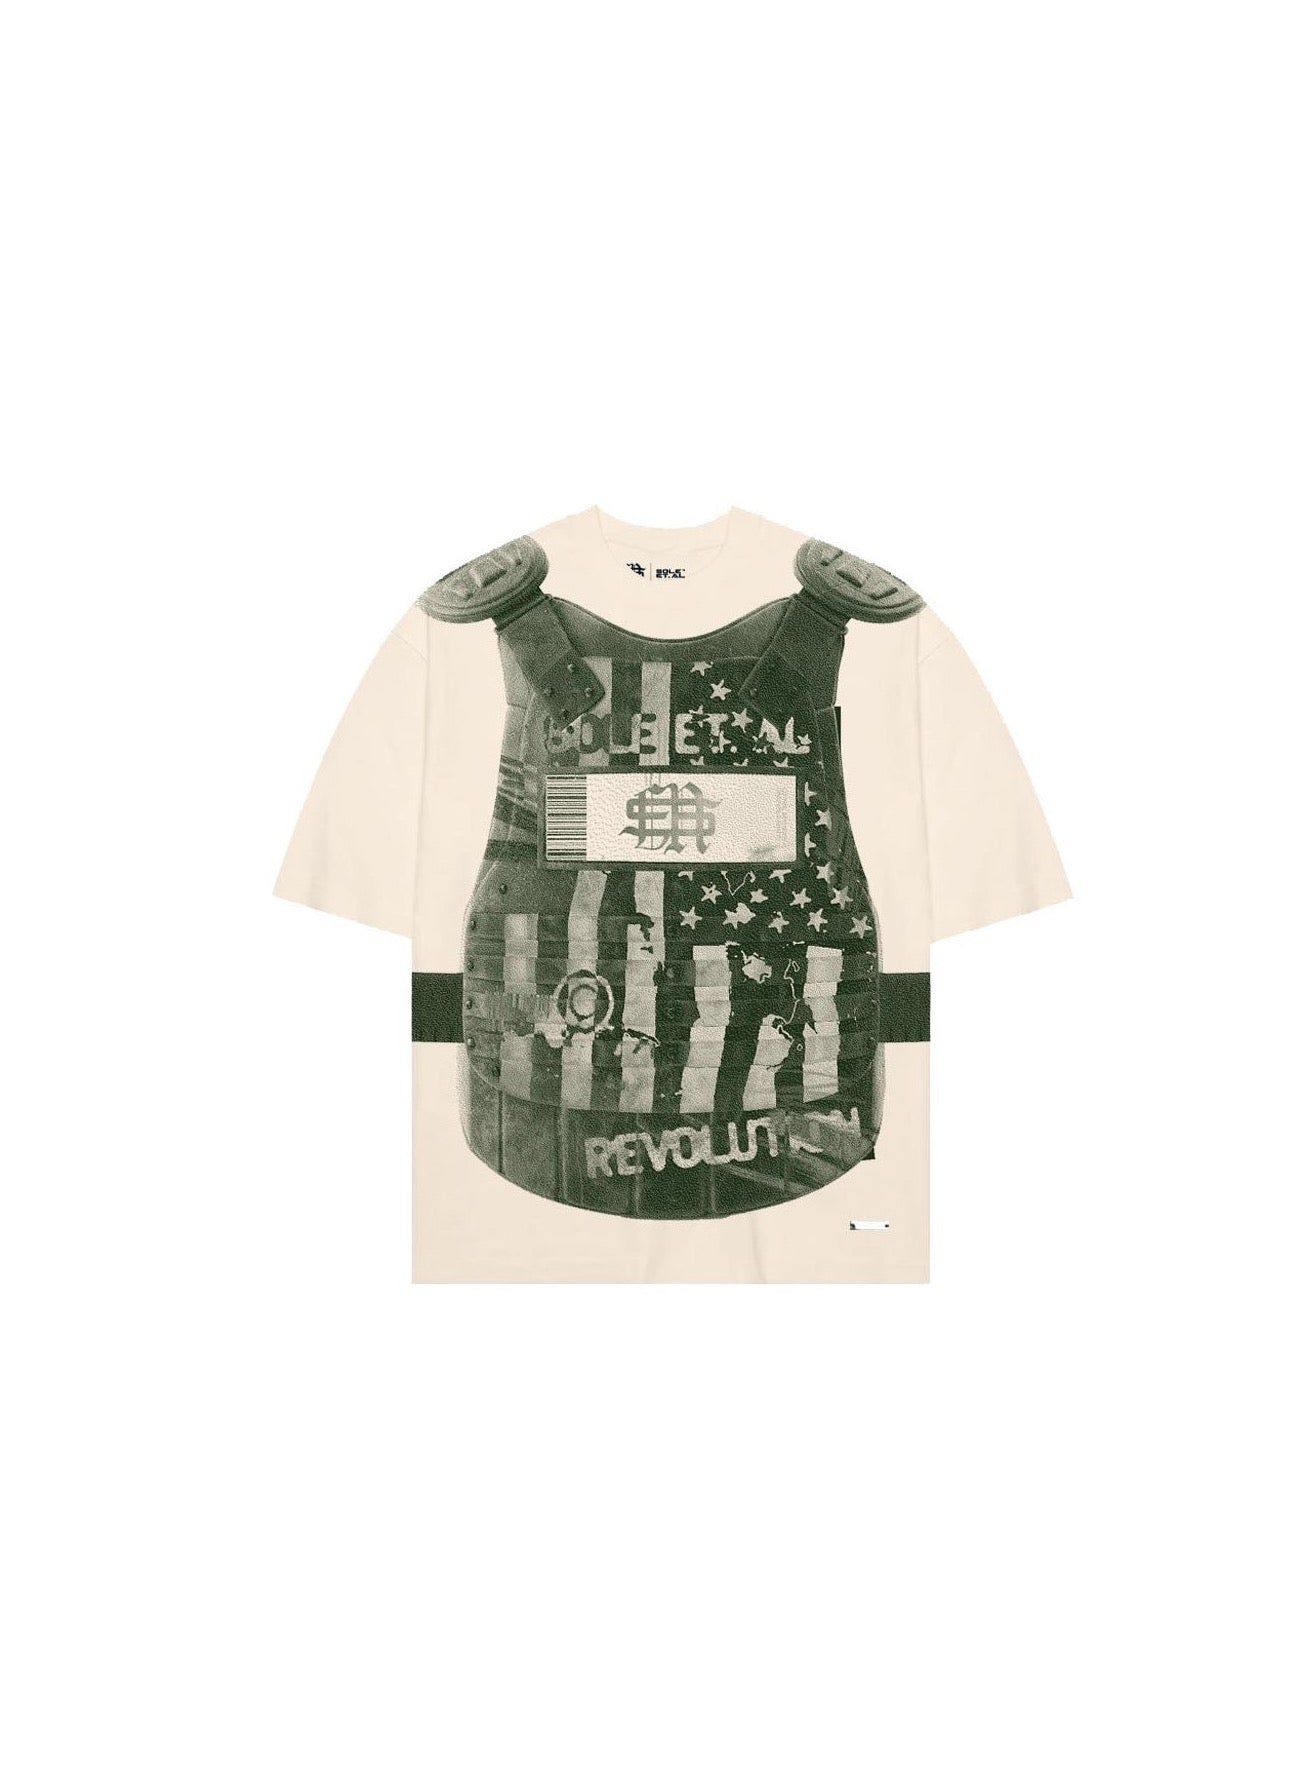 Sole et. Tee-shirt Al United Revolutionary : Sable / Vert Militaire